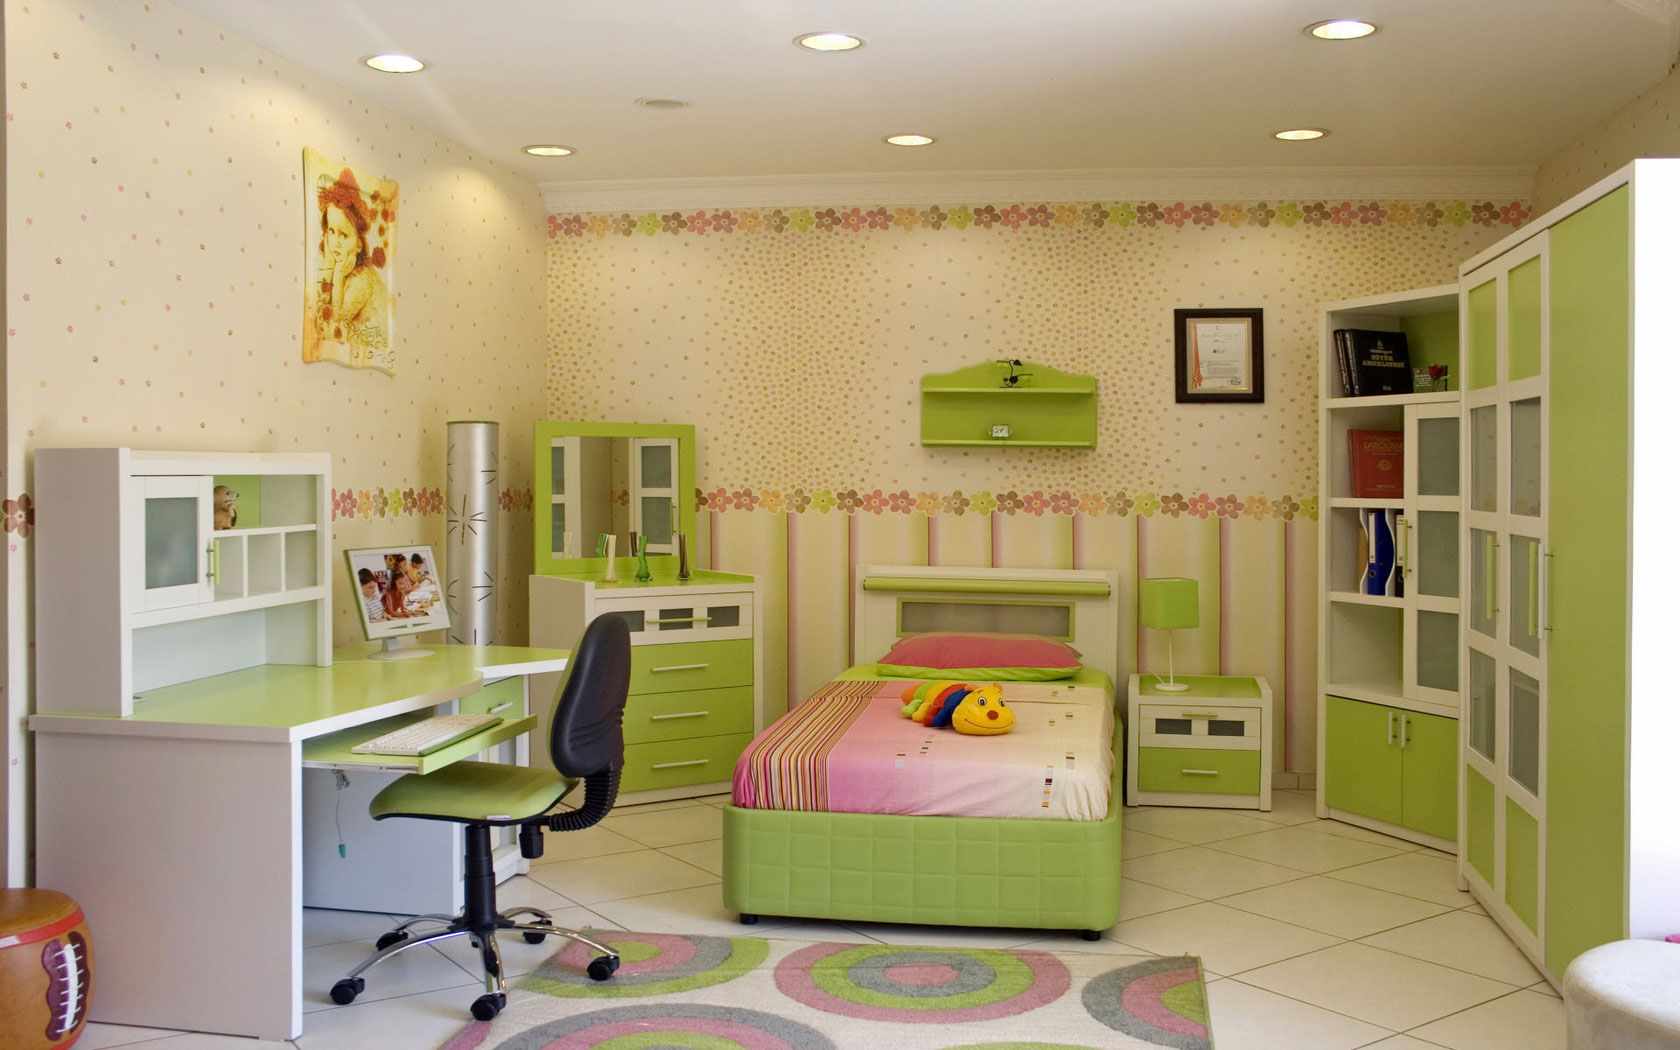 вариант необычного интерьера детской комнаты